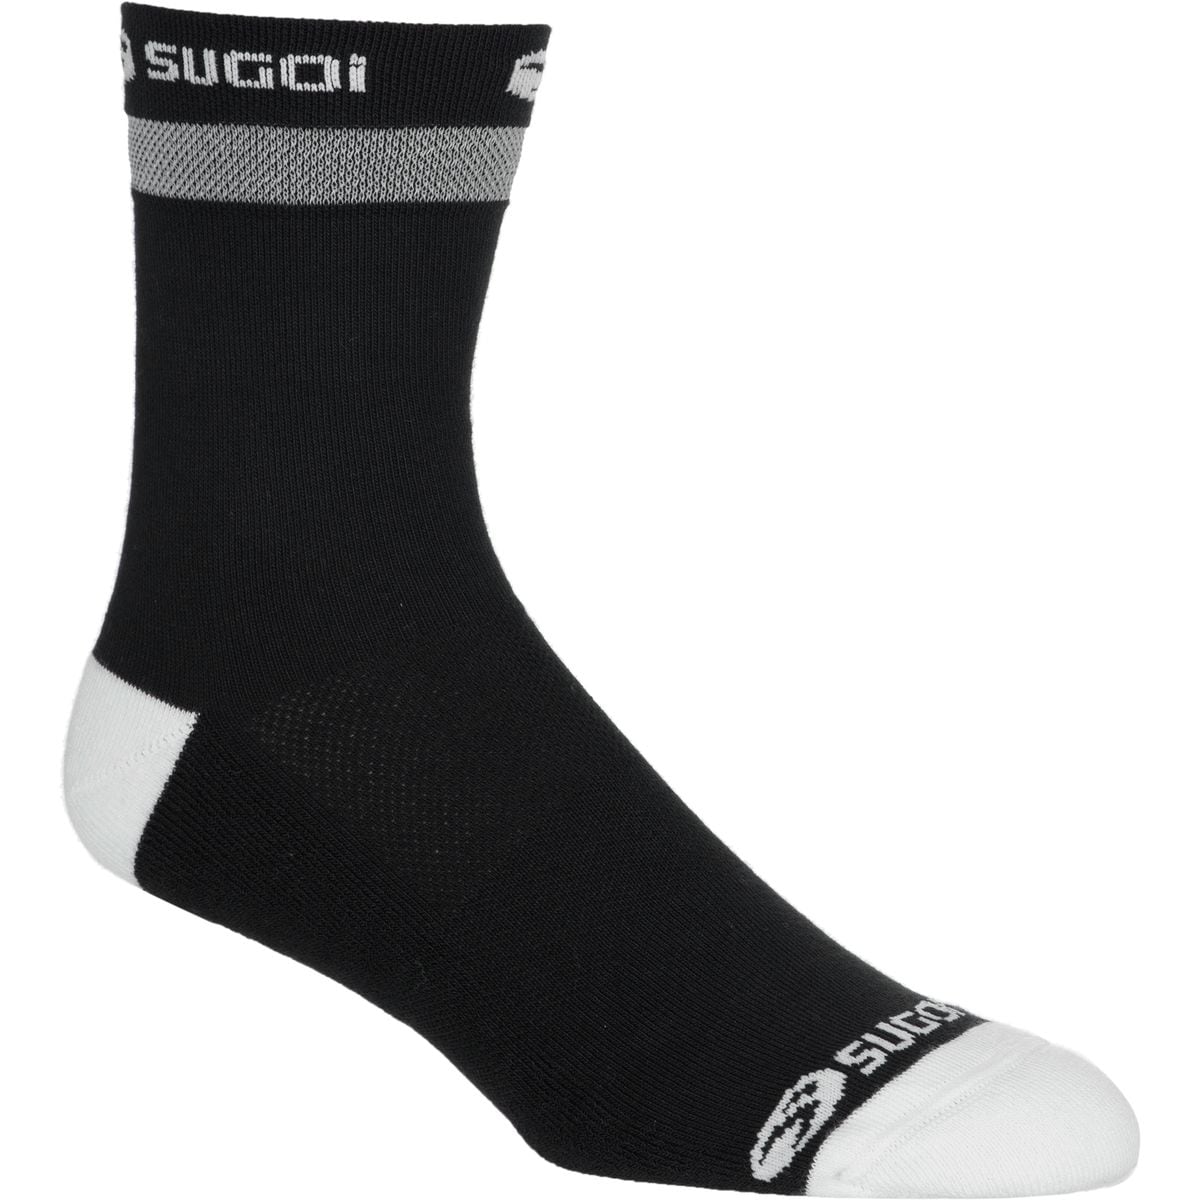 SUGOi Zap Winter Sock Mens